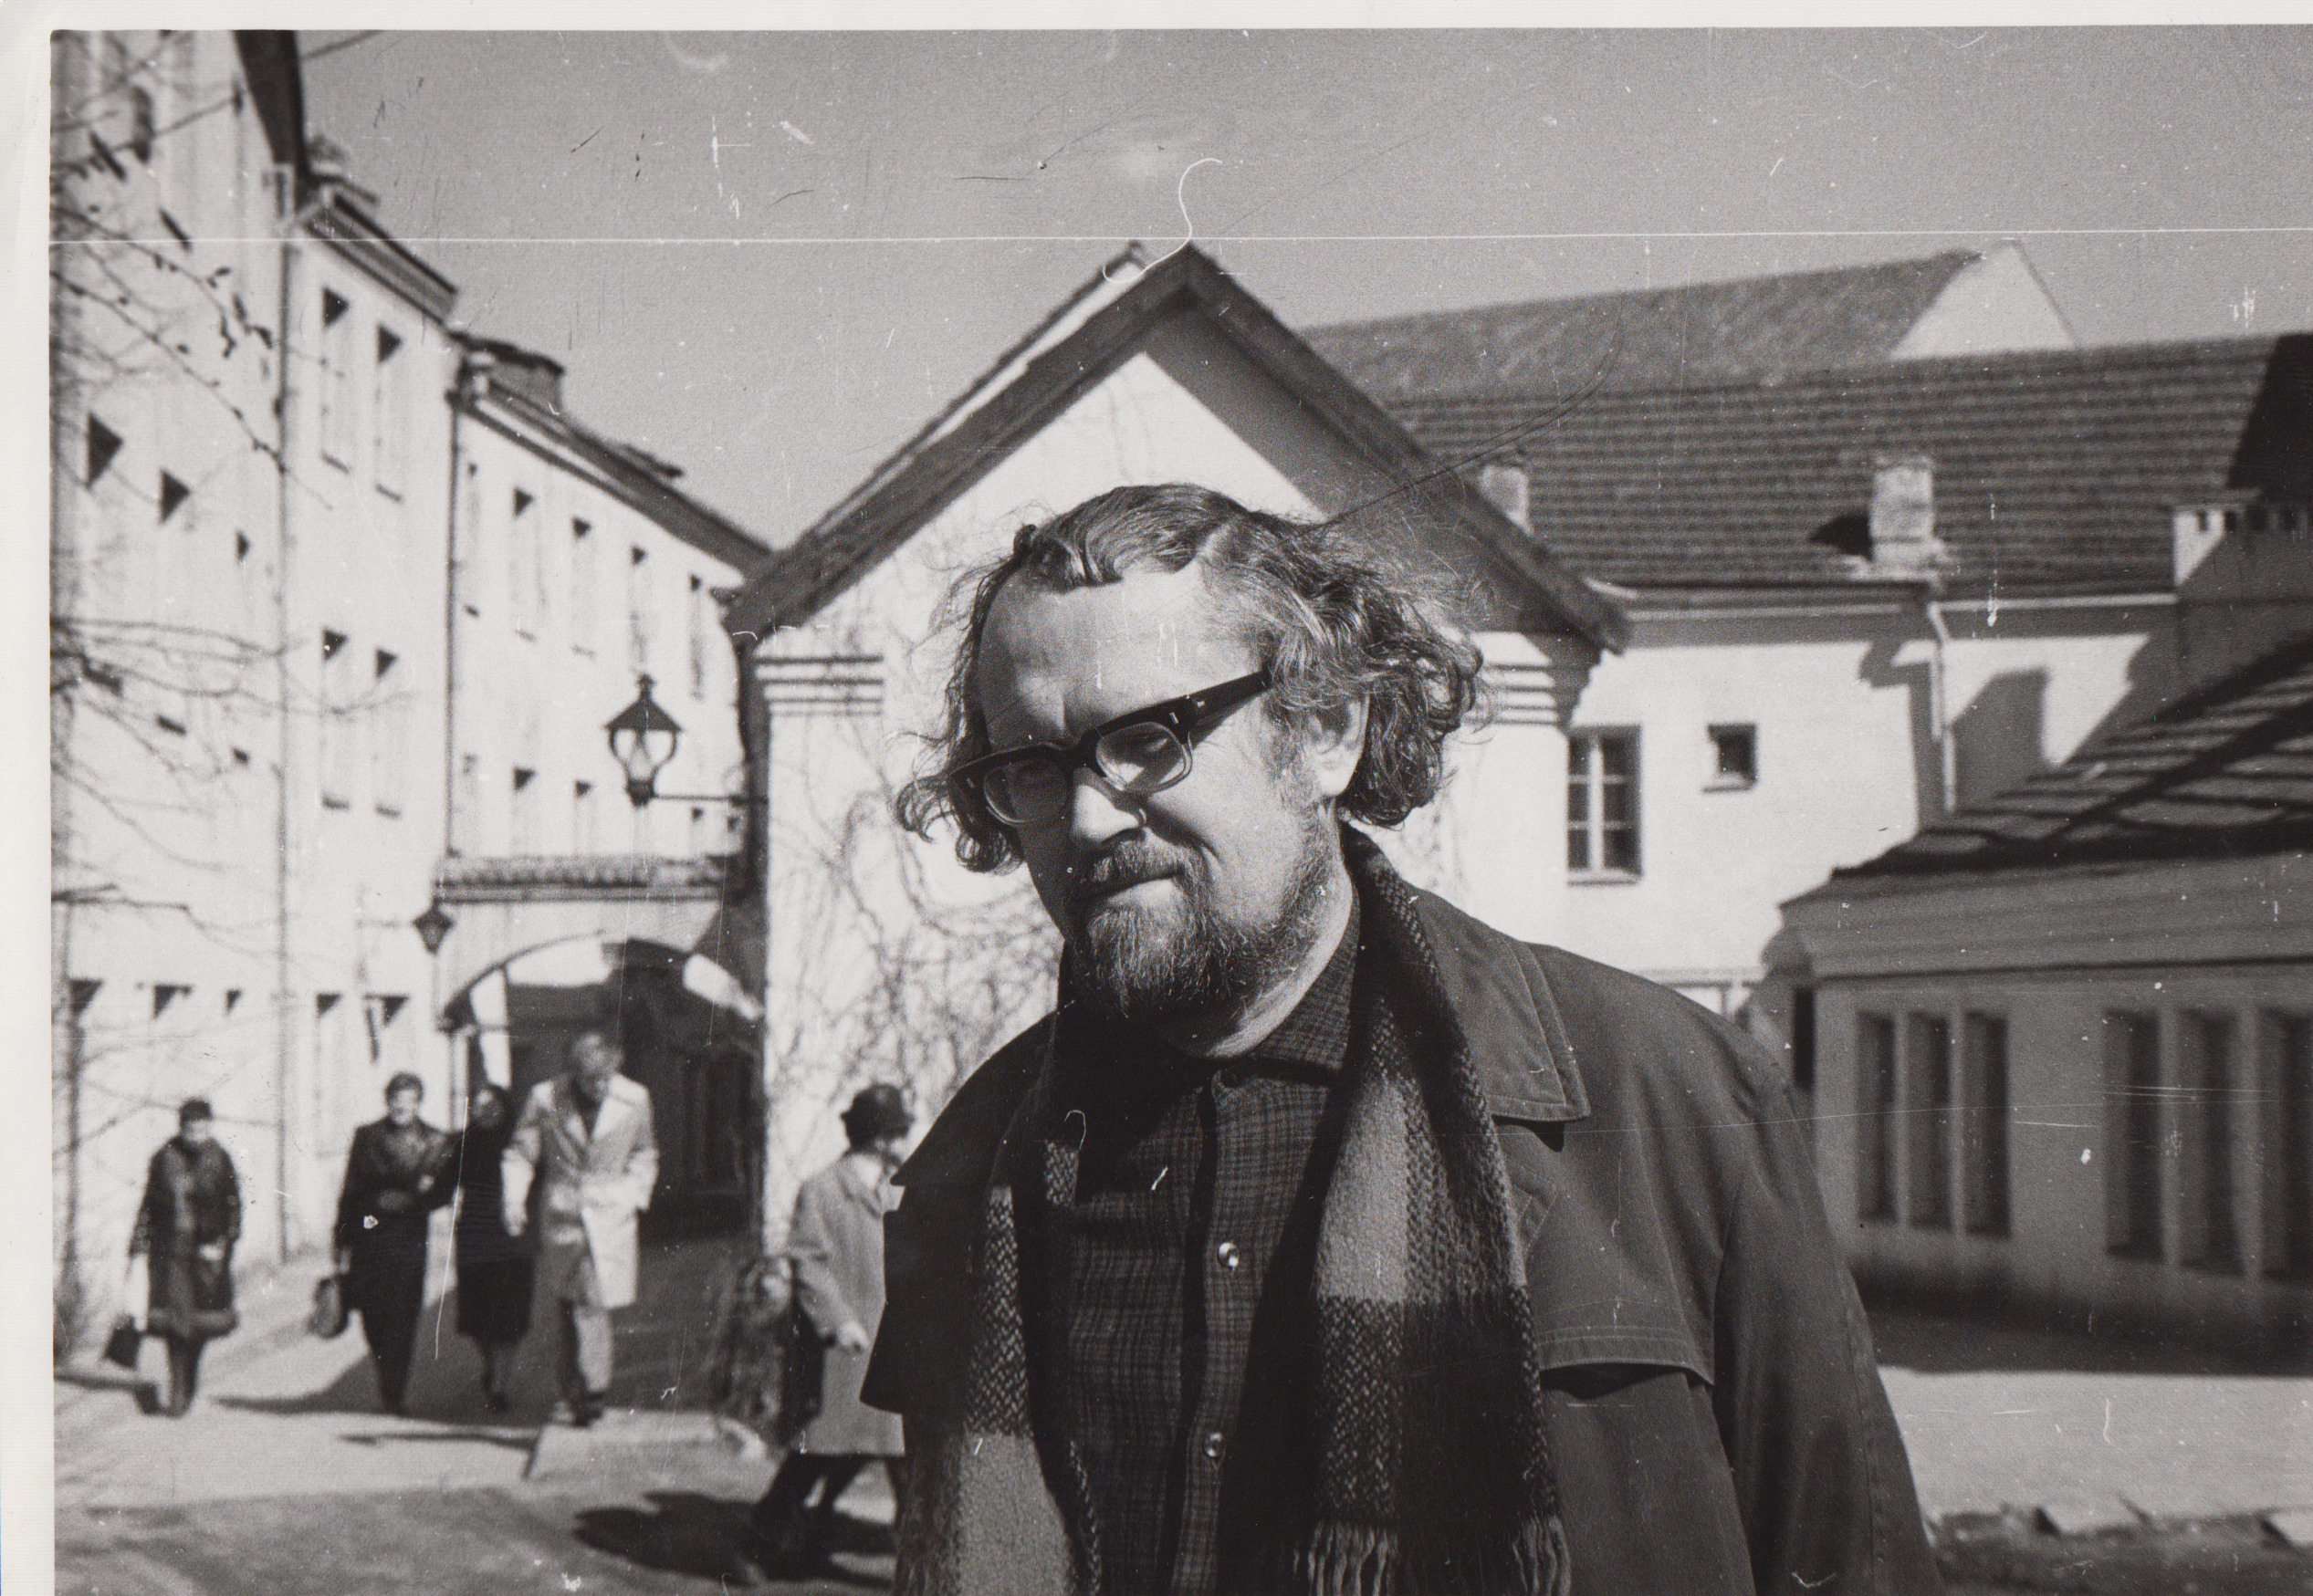 Vilniuje. Apie 1976 m. Fotografas J. Grikienis